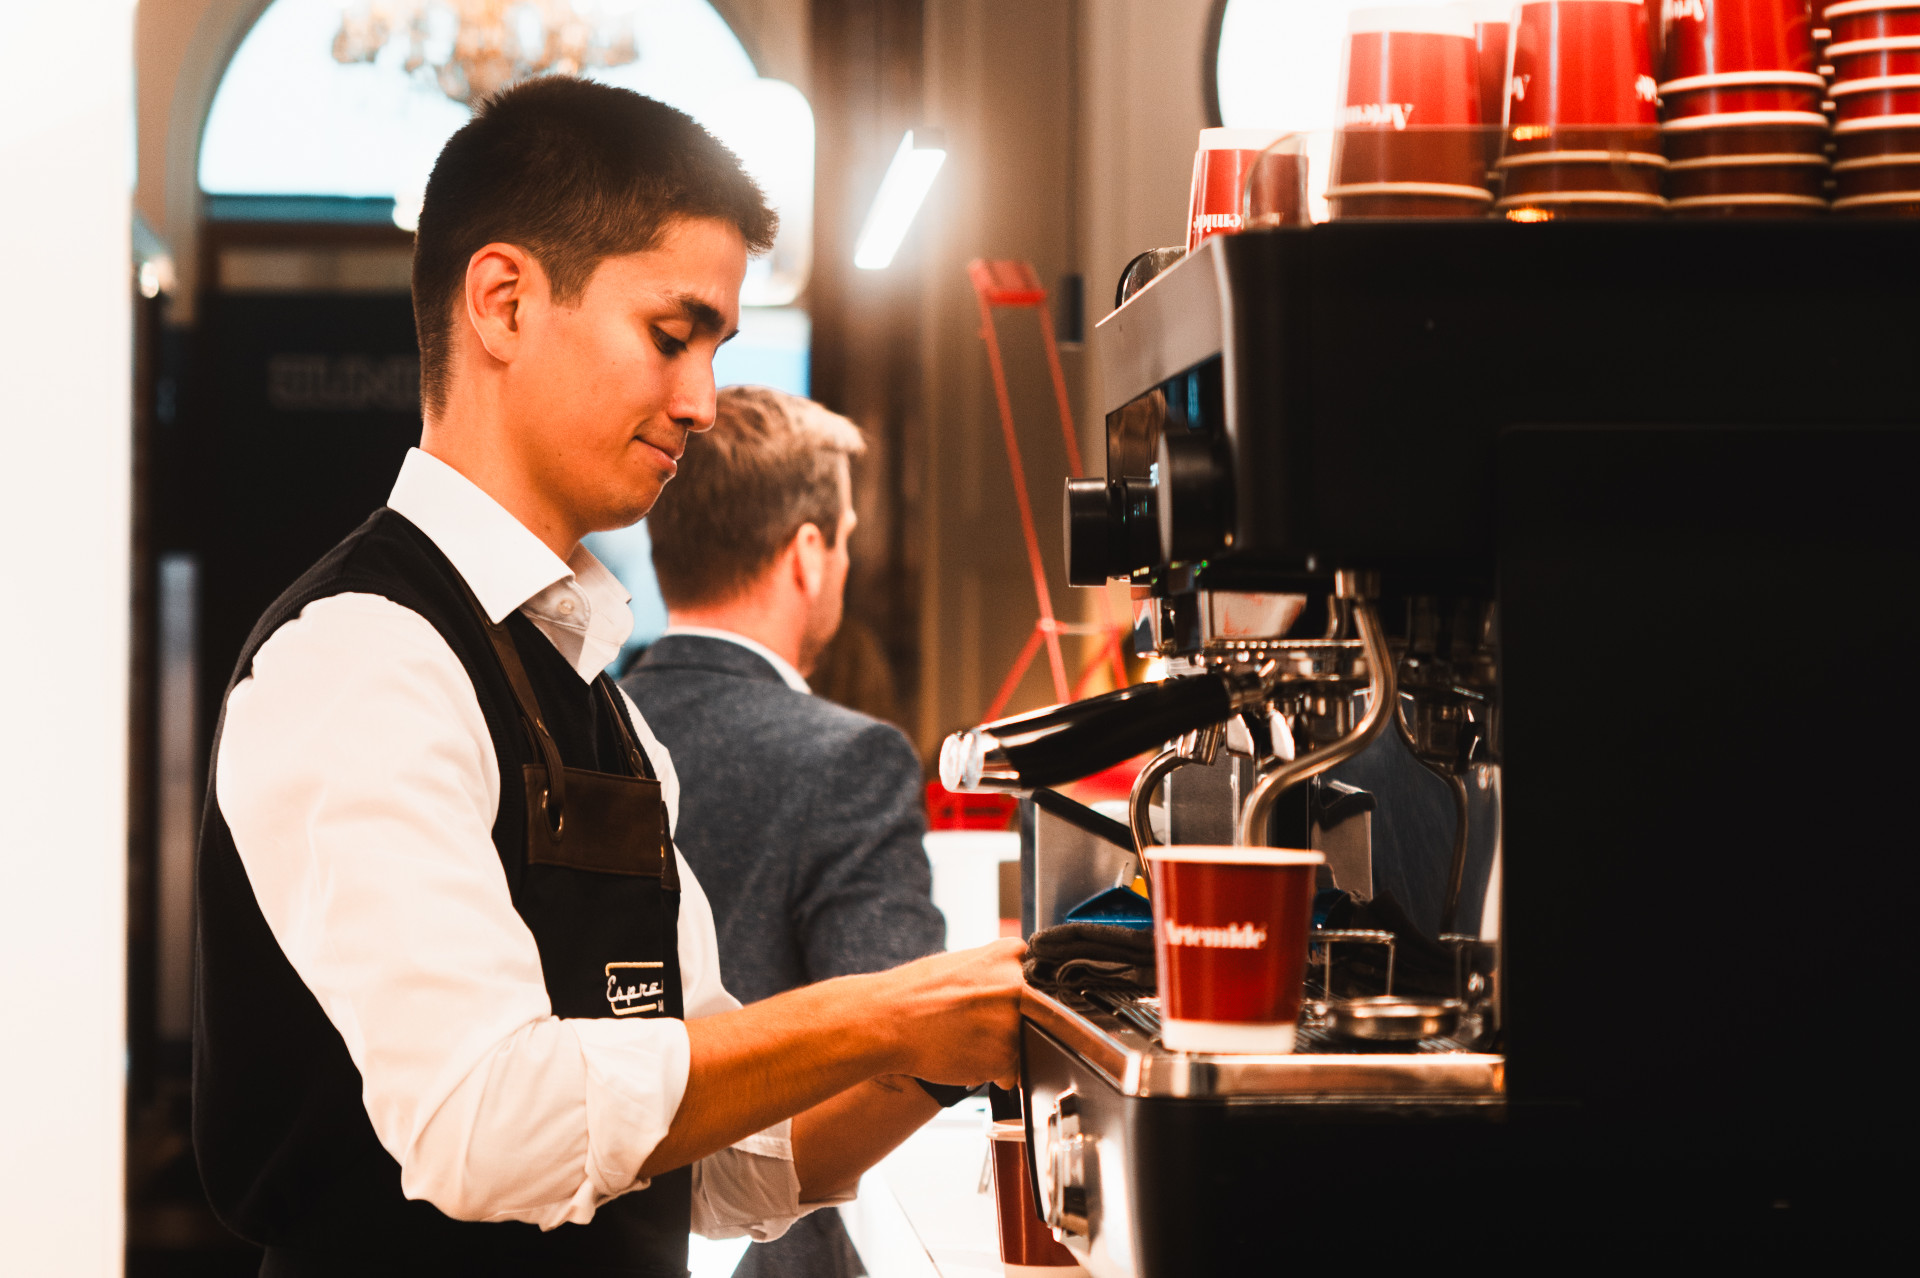 Espressomobil Barista bedient eine Kaffeemaschine